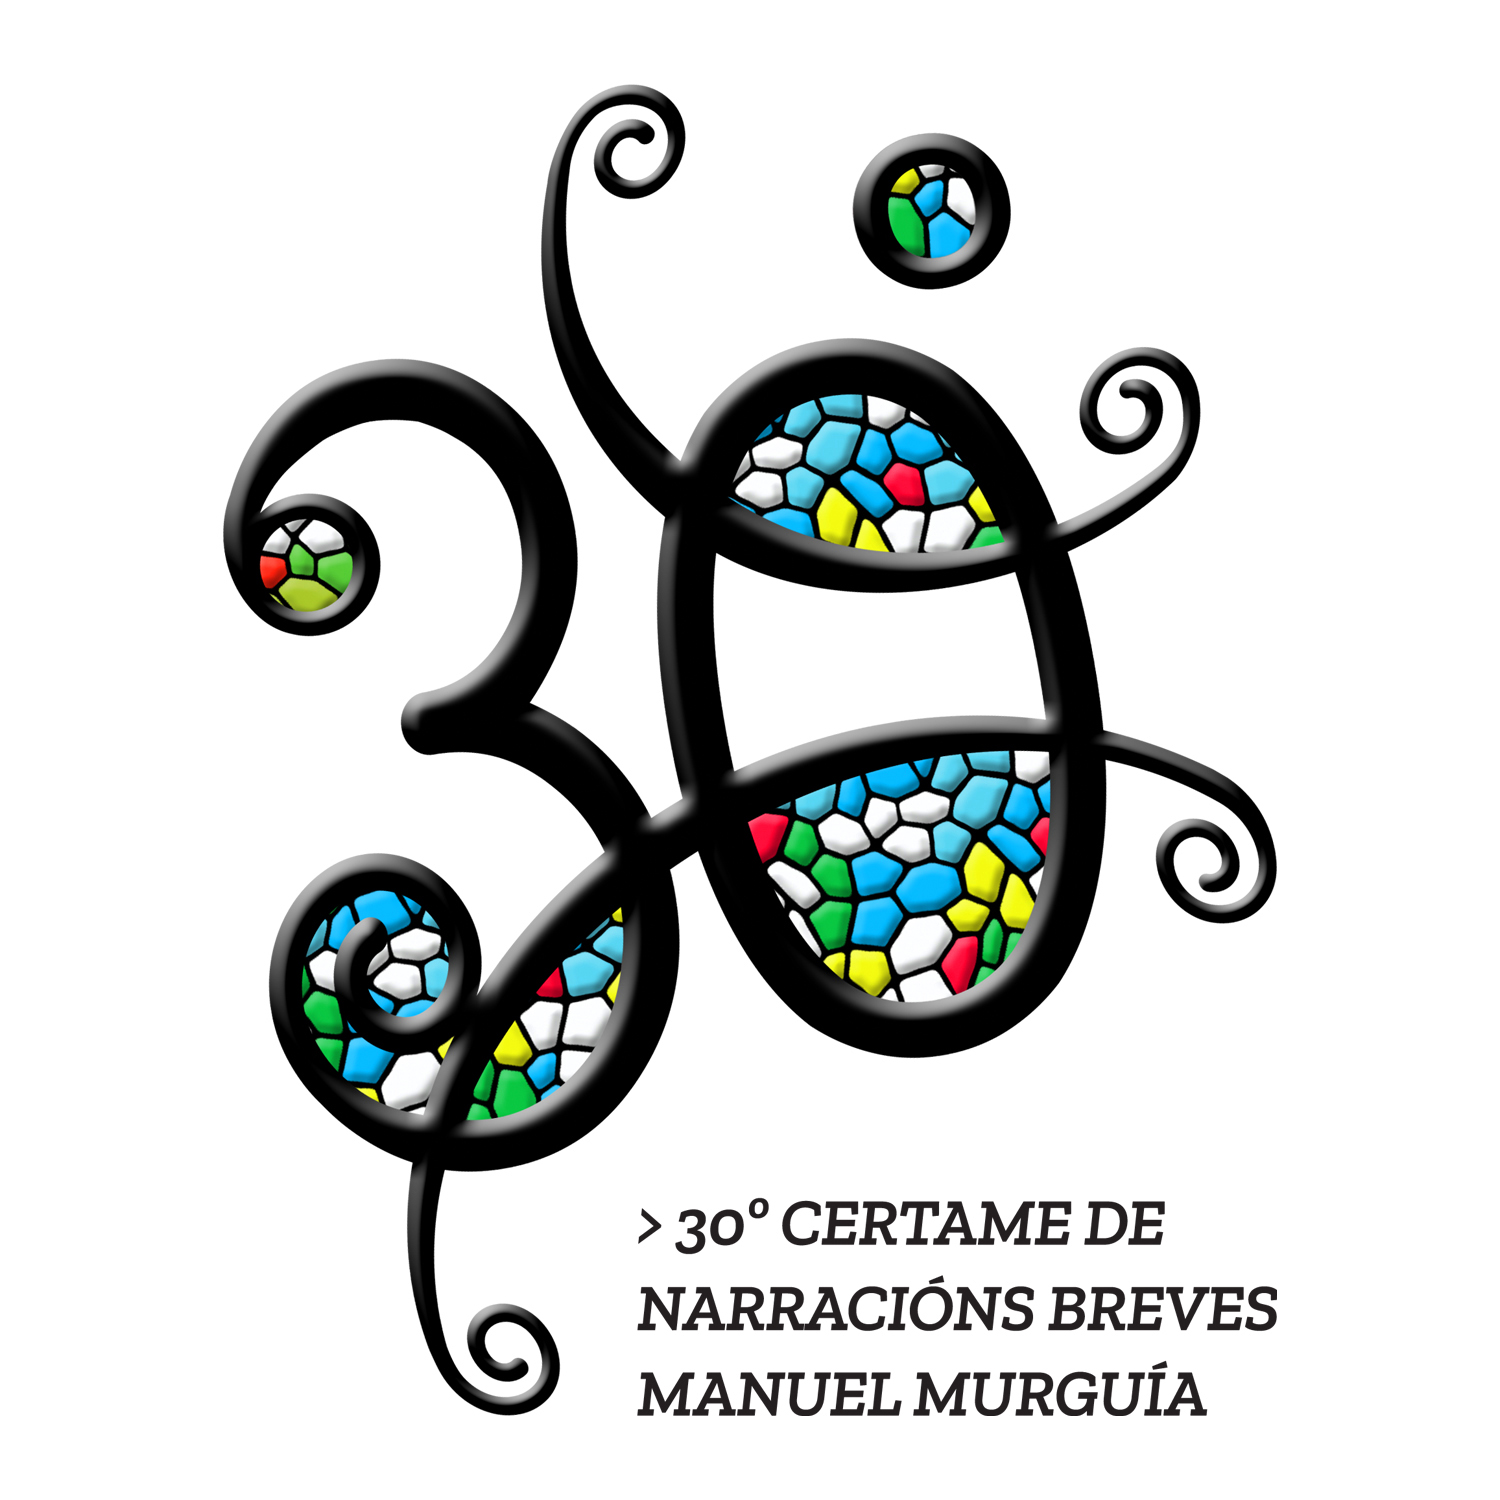 30º Certame de narracións breves Manuel Murguía